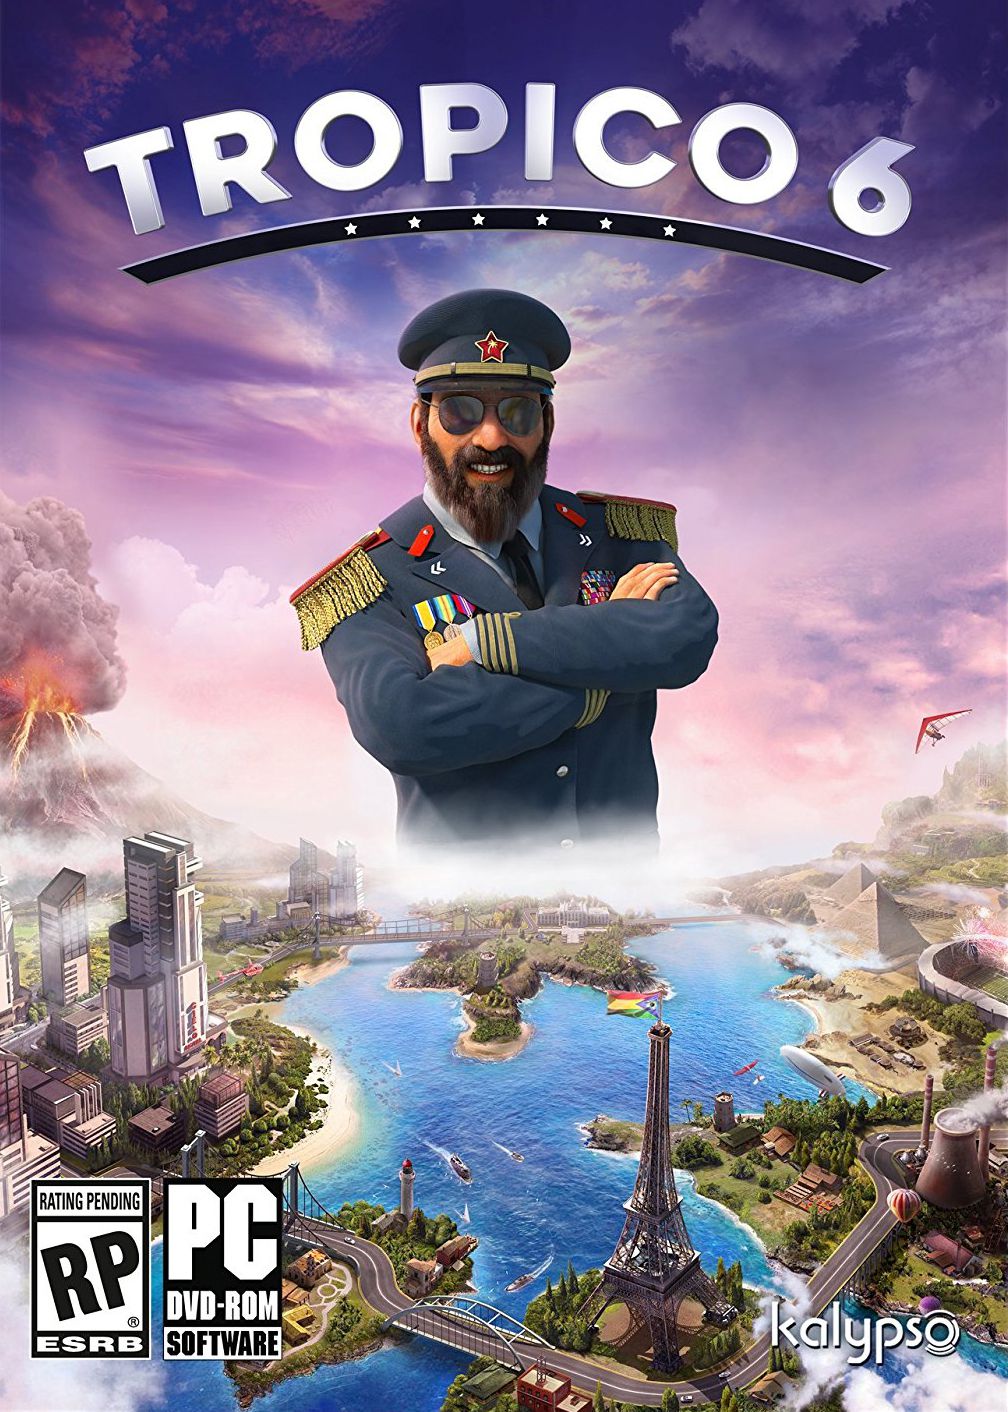 jaquette reduite de Tropico 6 sur PC